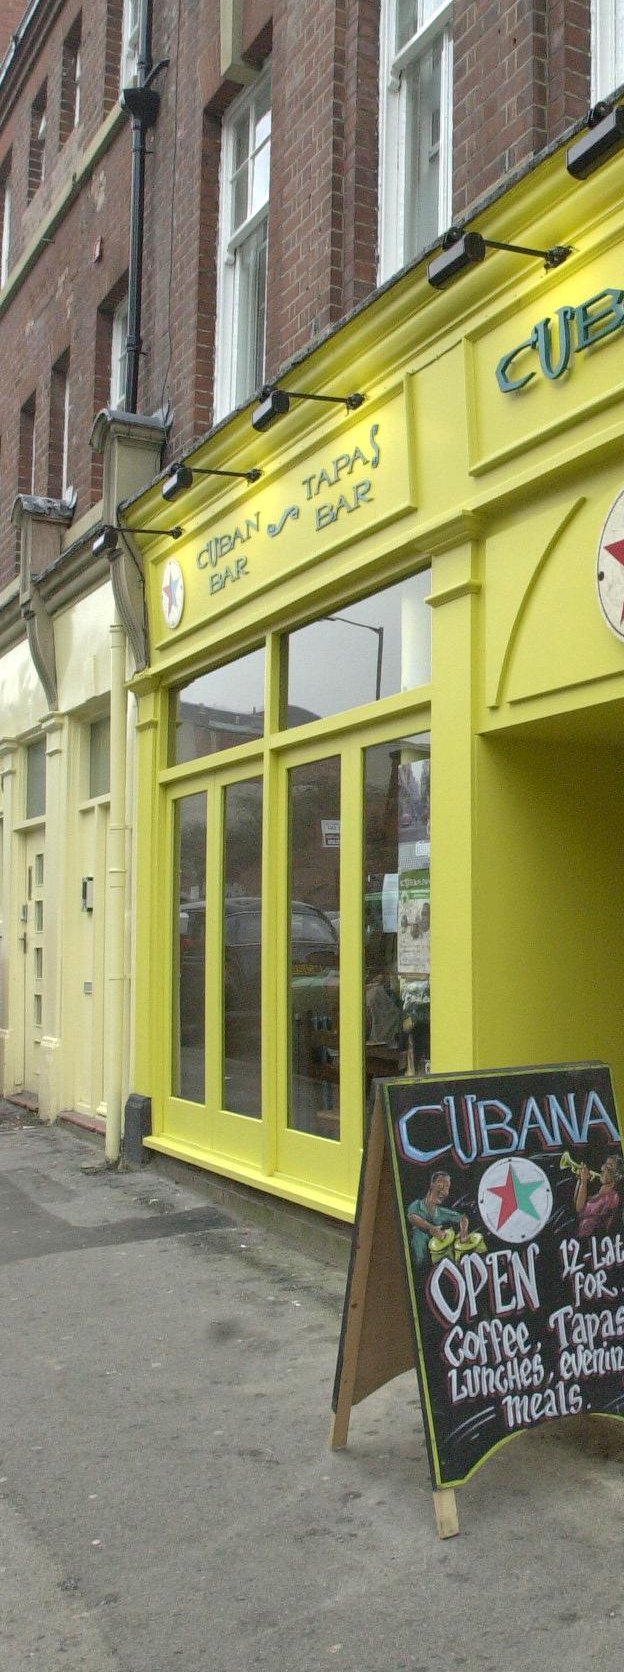 Cubana tapas bar, on Trippet Lane, Sheffield, in 2001